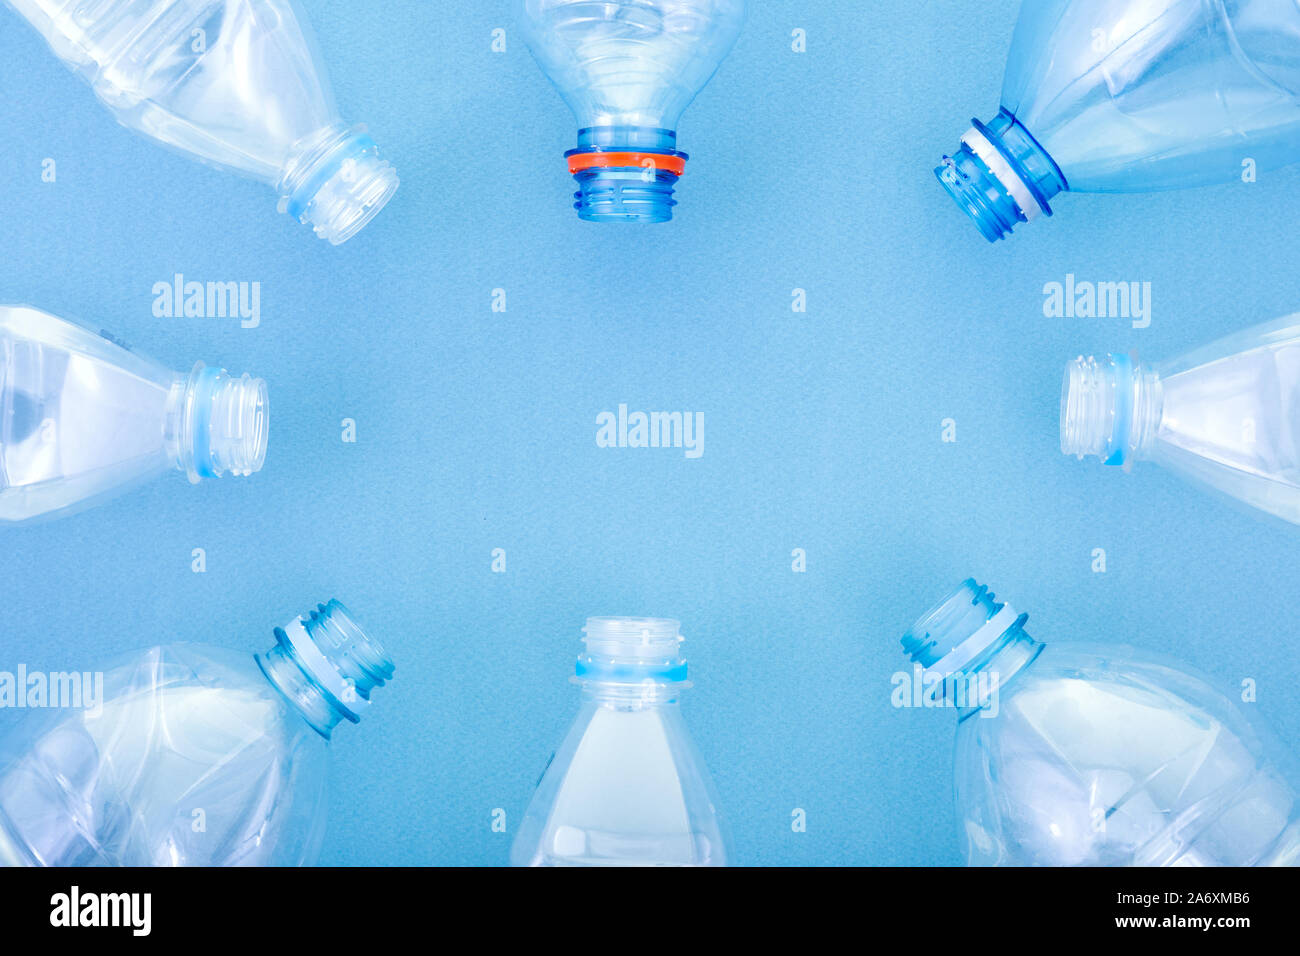 Plastikflaschen auf einem blauen Karton Hintergrund Stockfoto